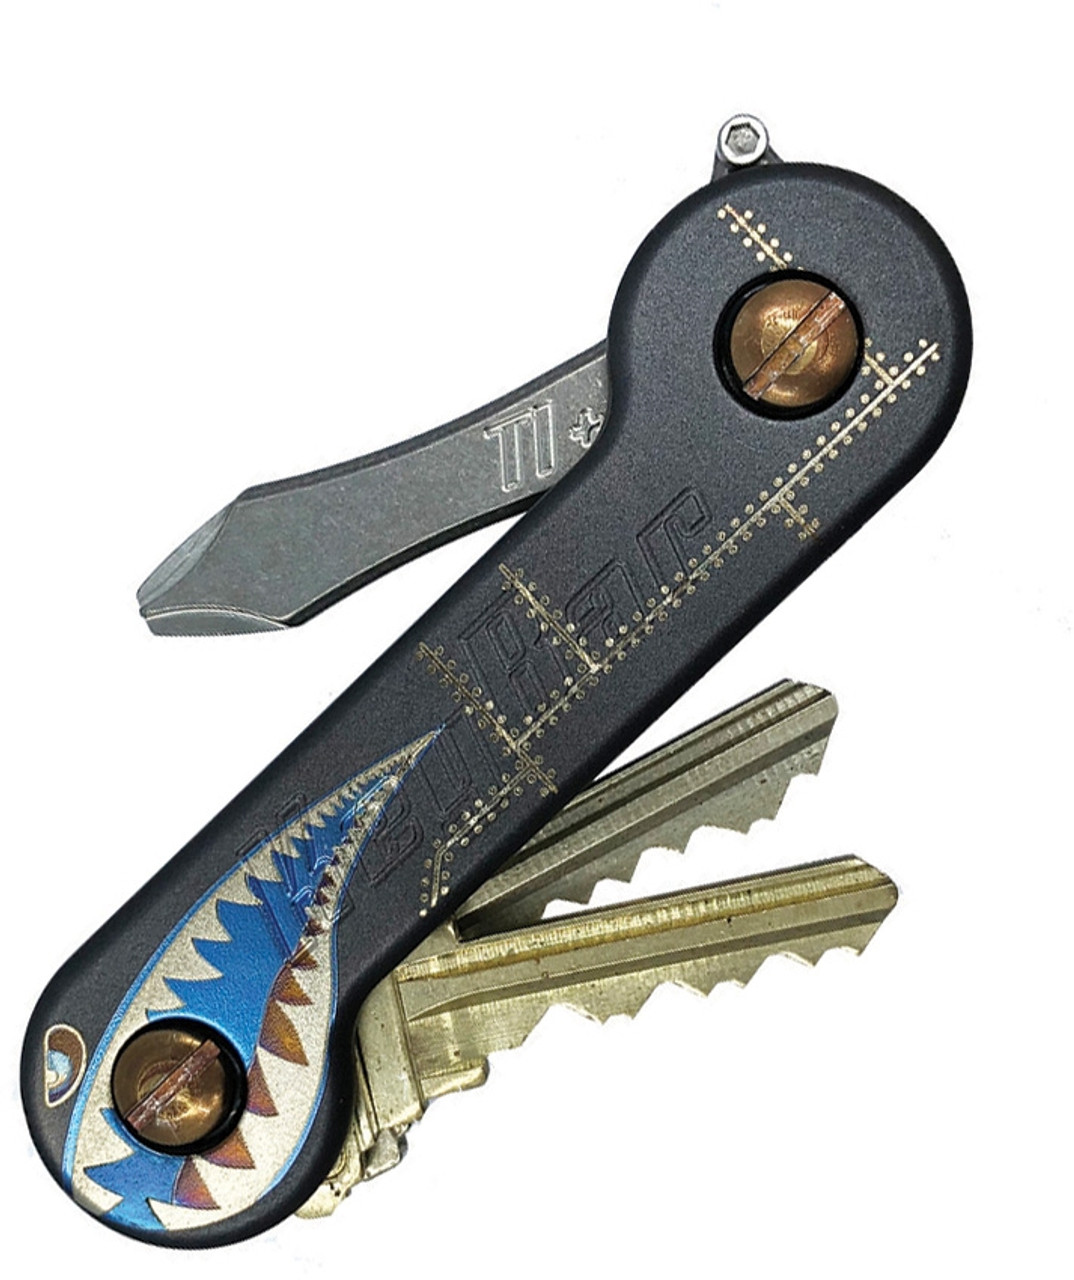 KeyBar Titanium Stealth Bomber Key - Holder/Organizer (Holds up to 12 Keys)